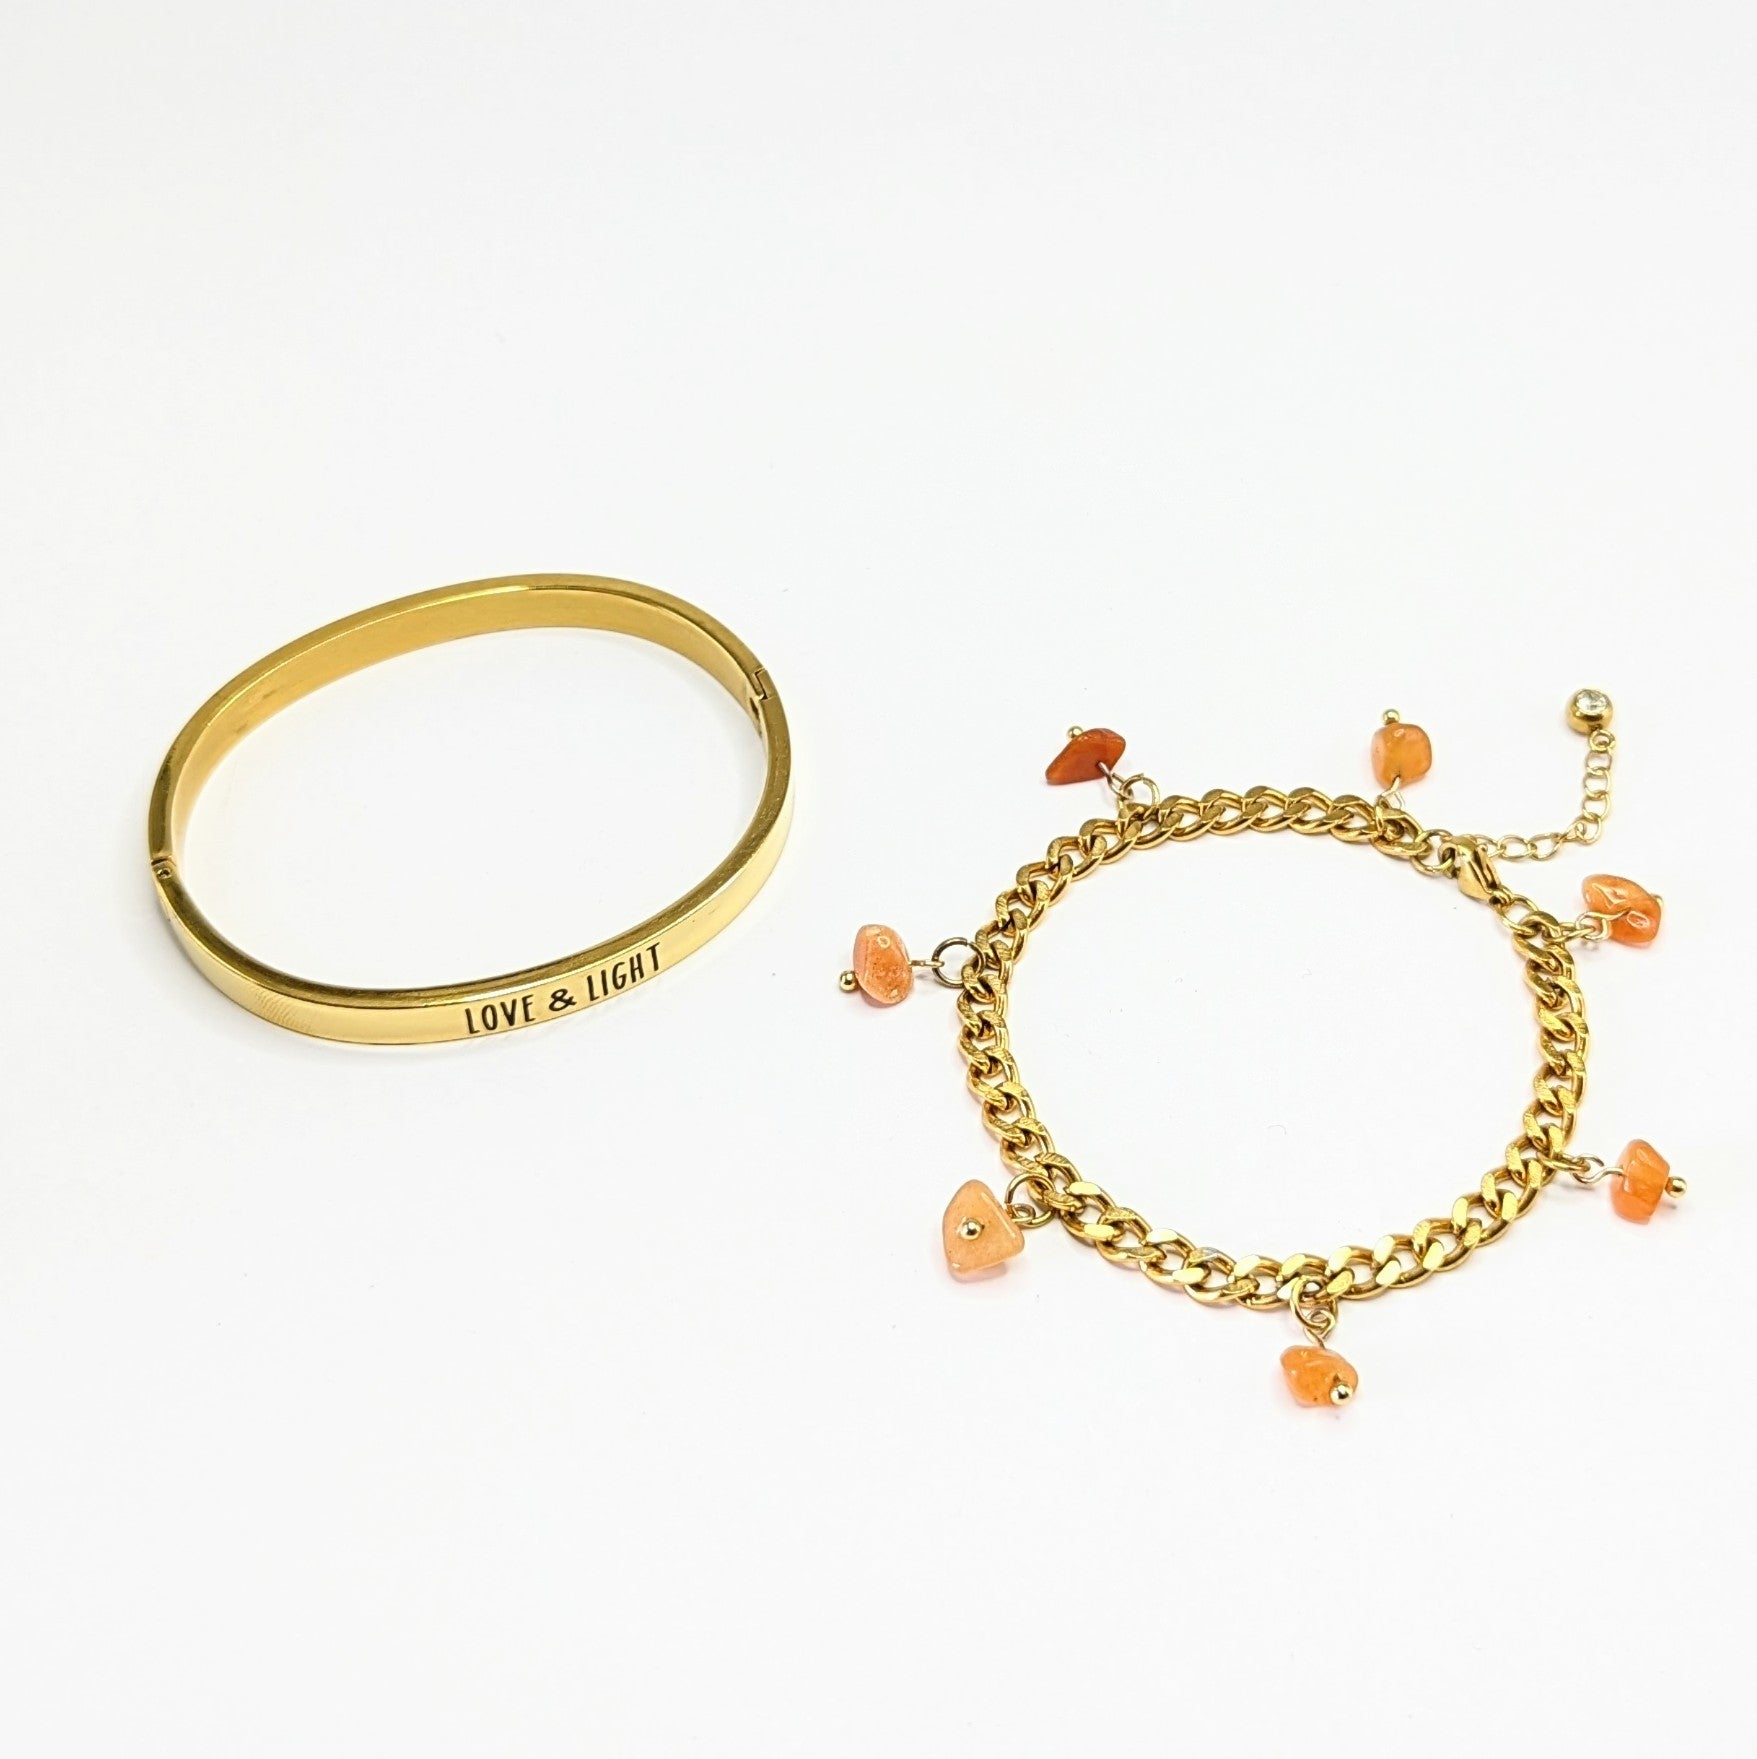 GOLD Bangle & 'Heal Me' Crystal Charm Bracelet Gift Set